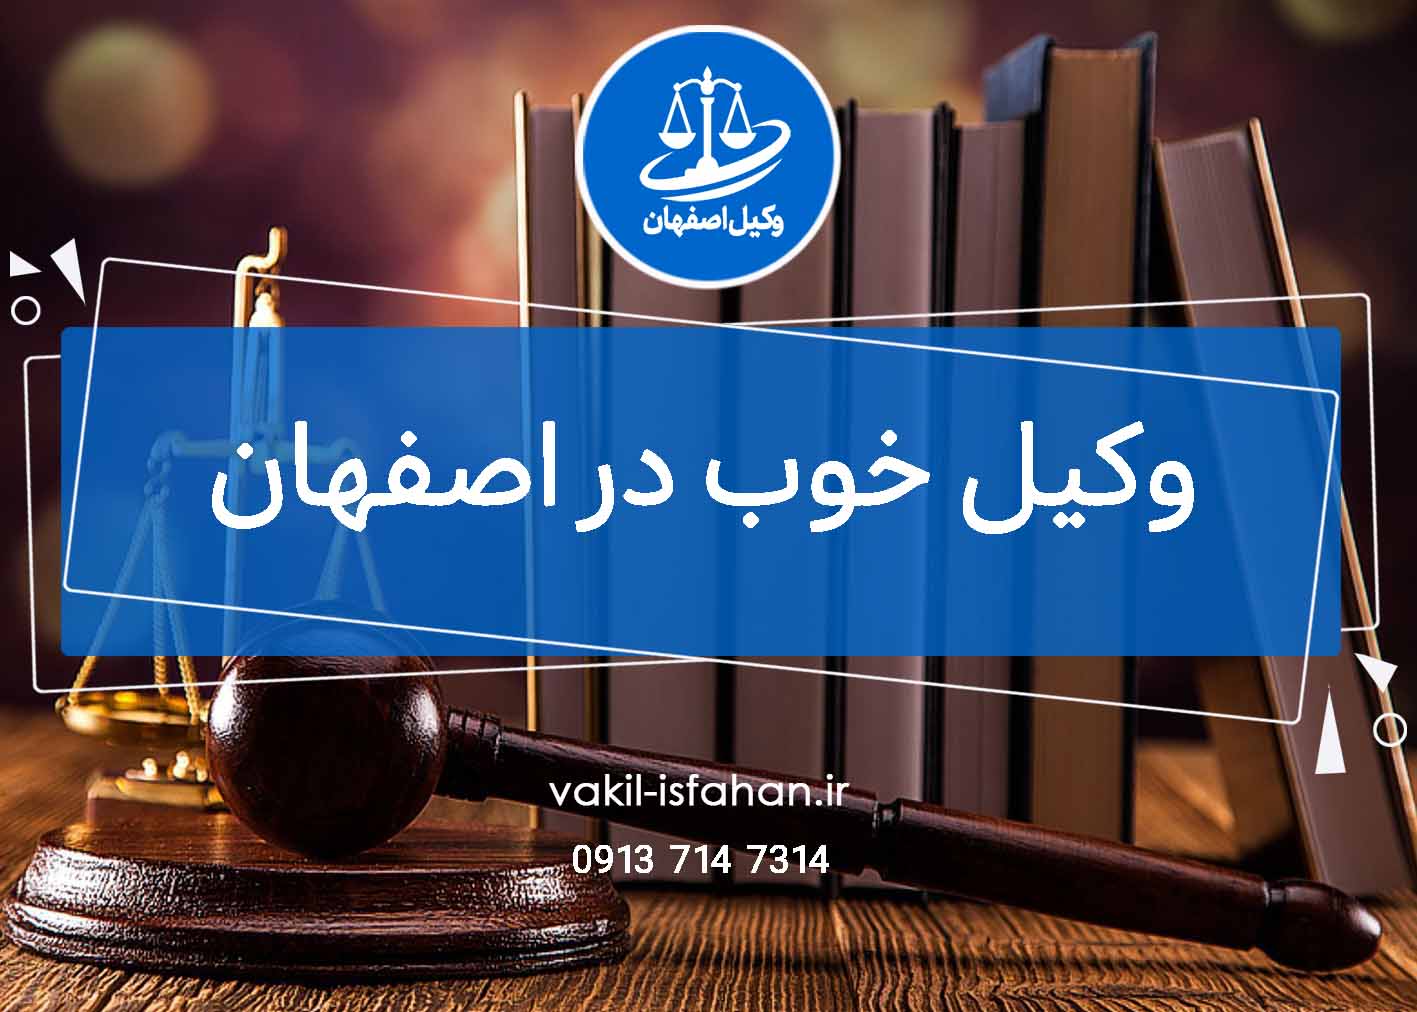 وکیل خوب در اصفهان – ۴ ویژگی لازم